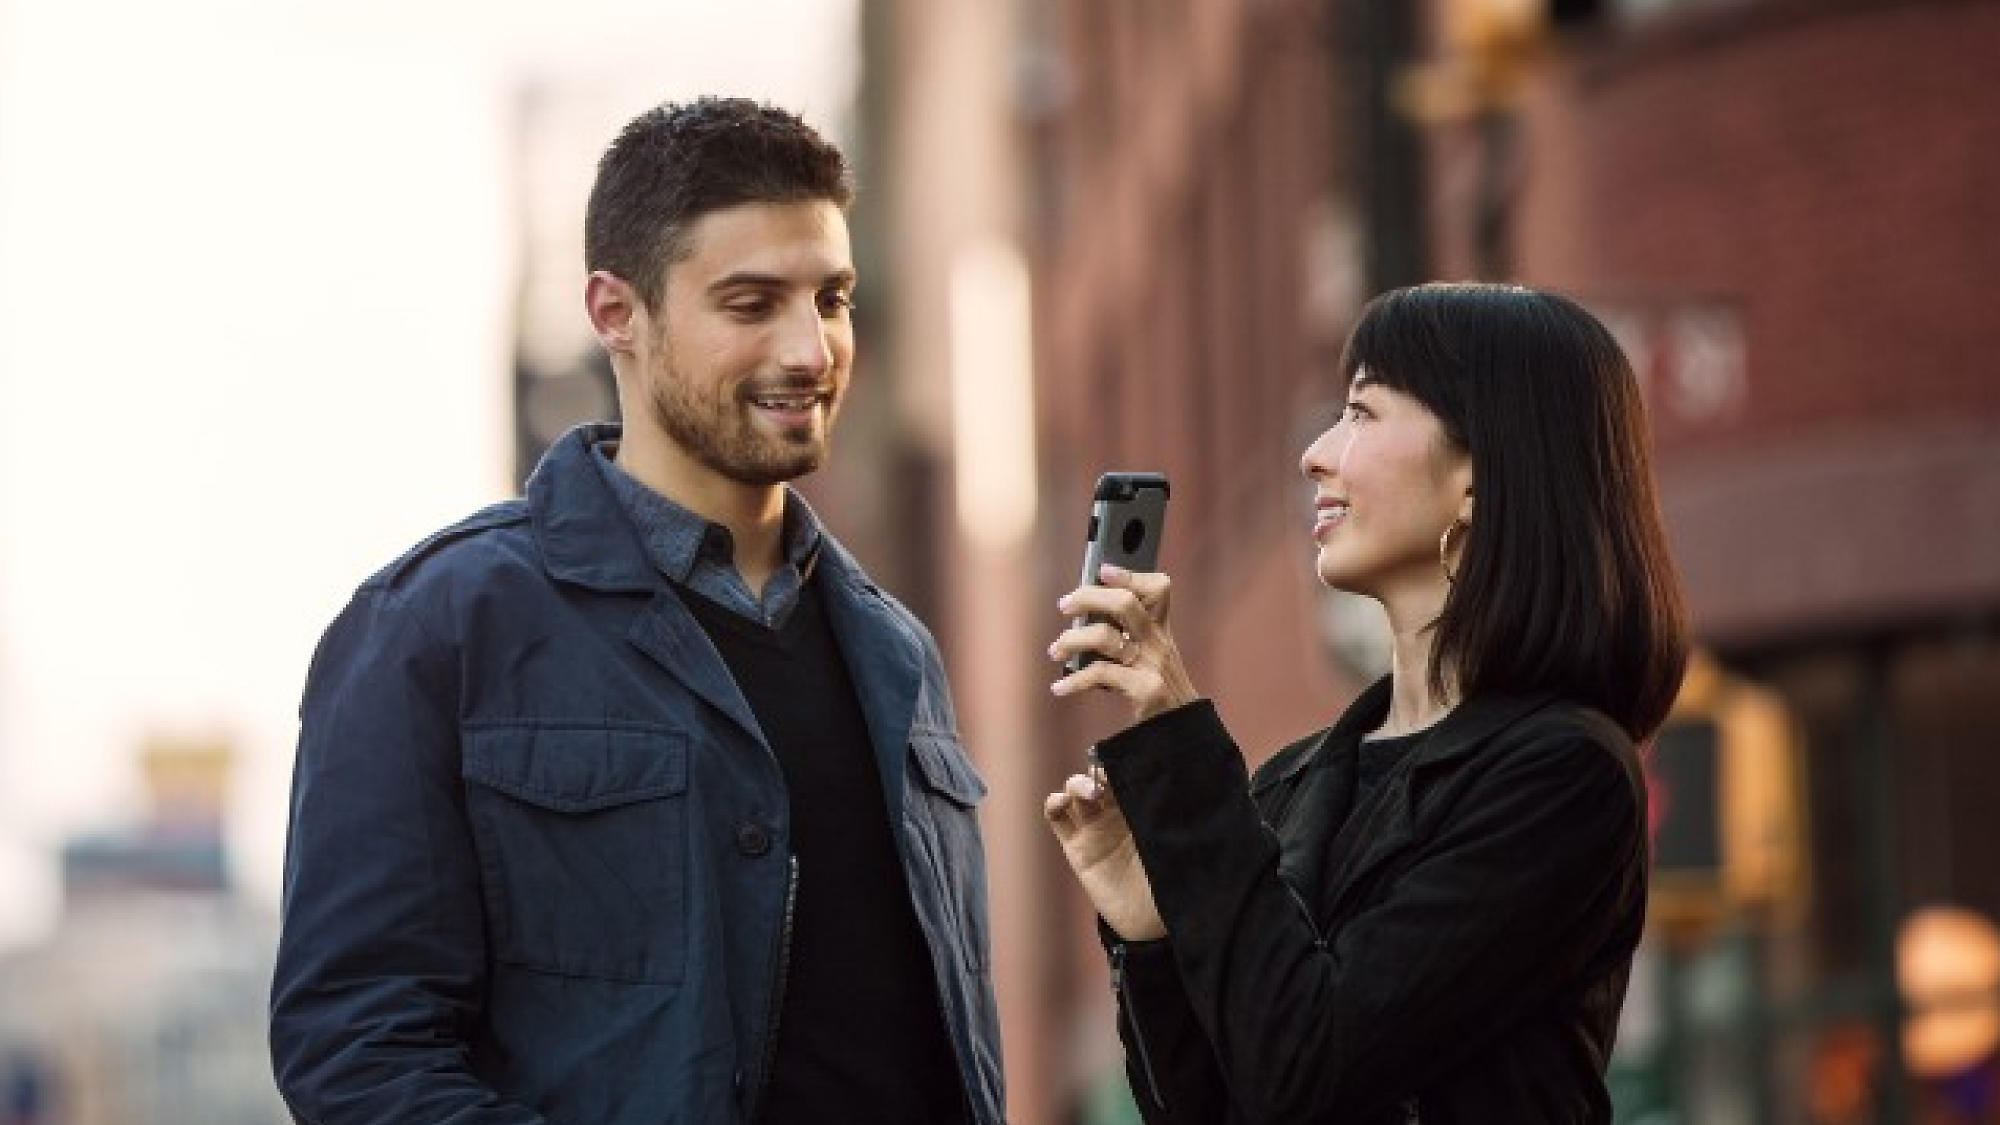 Uma mulher a segurar um smartphone aponta-o para um homem, enquanto ambos estão numa rua da cidade, sorridentes e a conversar.